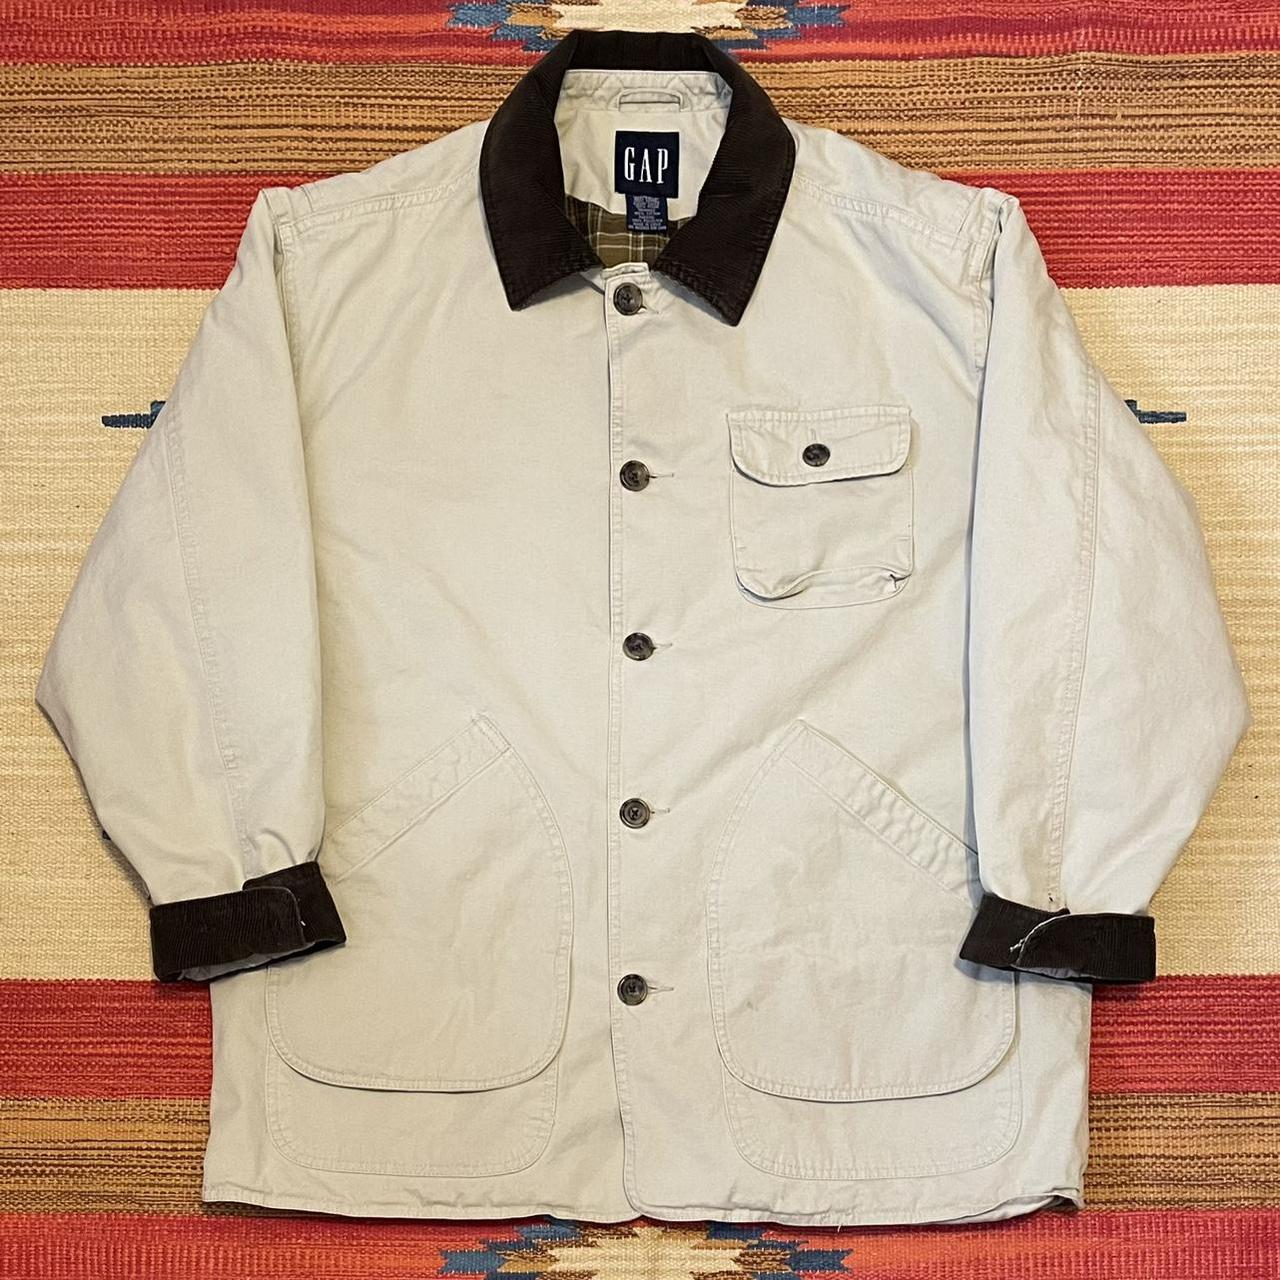 Vintage GAP chore jacket 1990s Y2K tan cream barn... - Depop